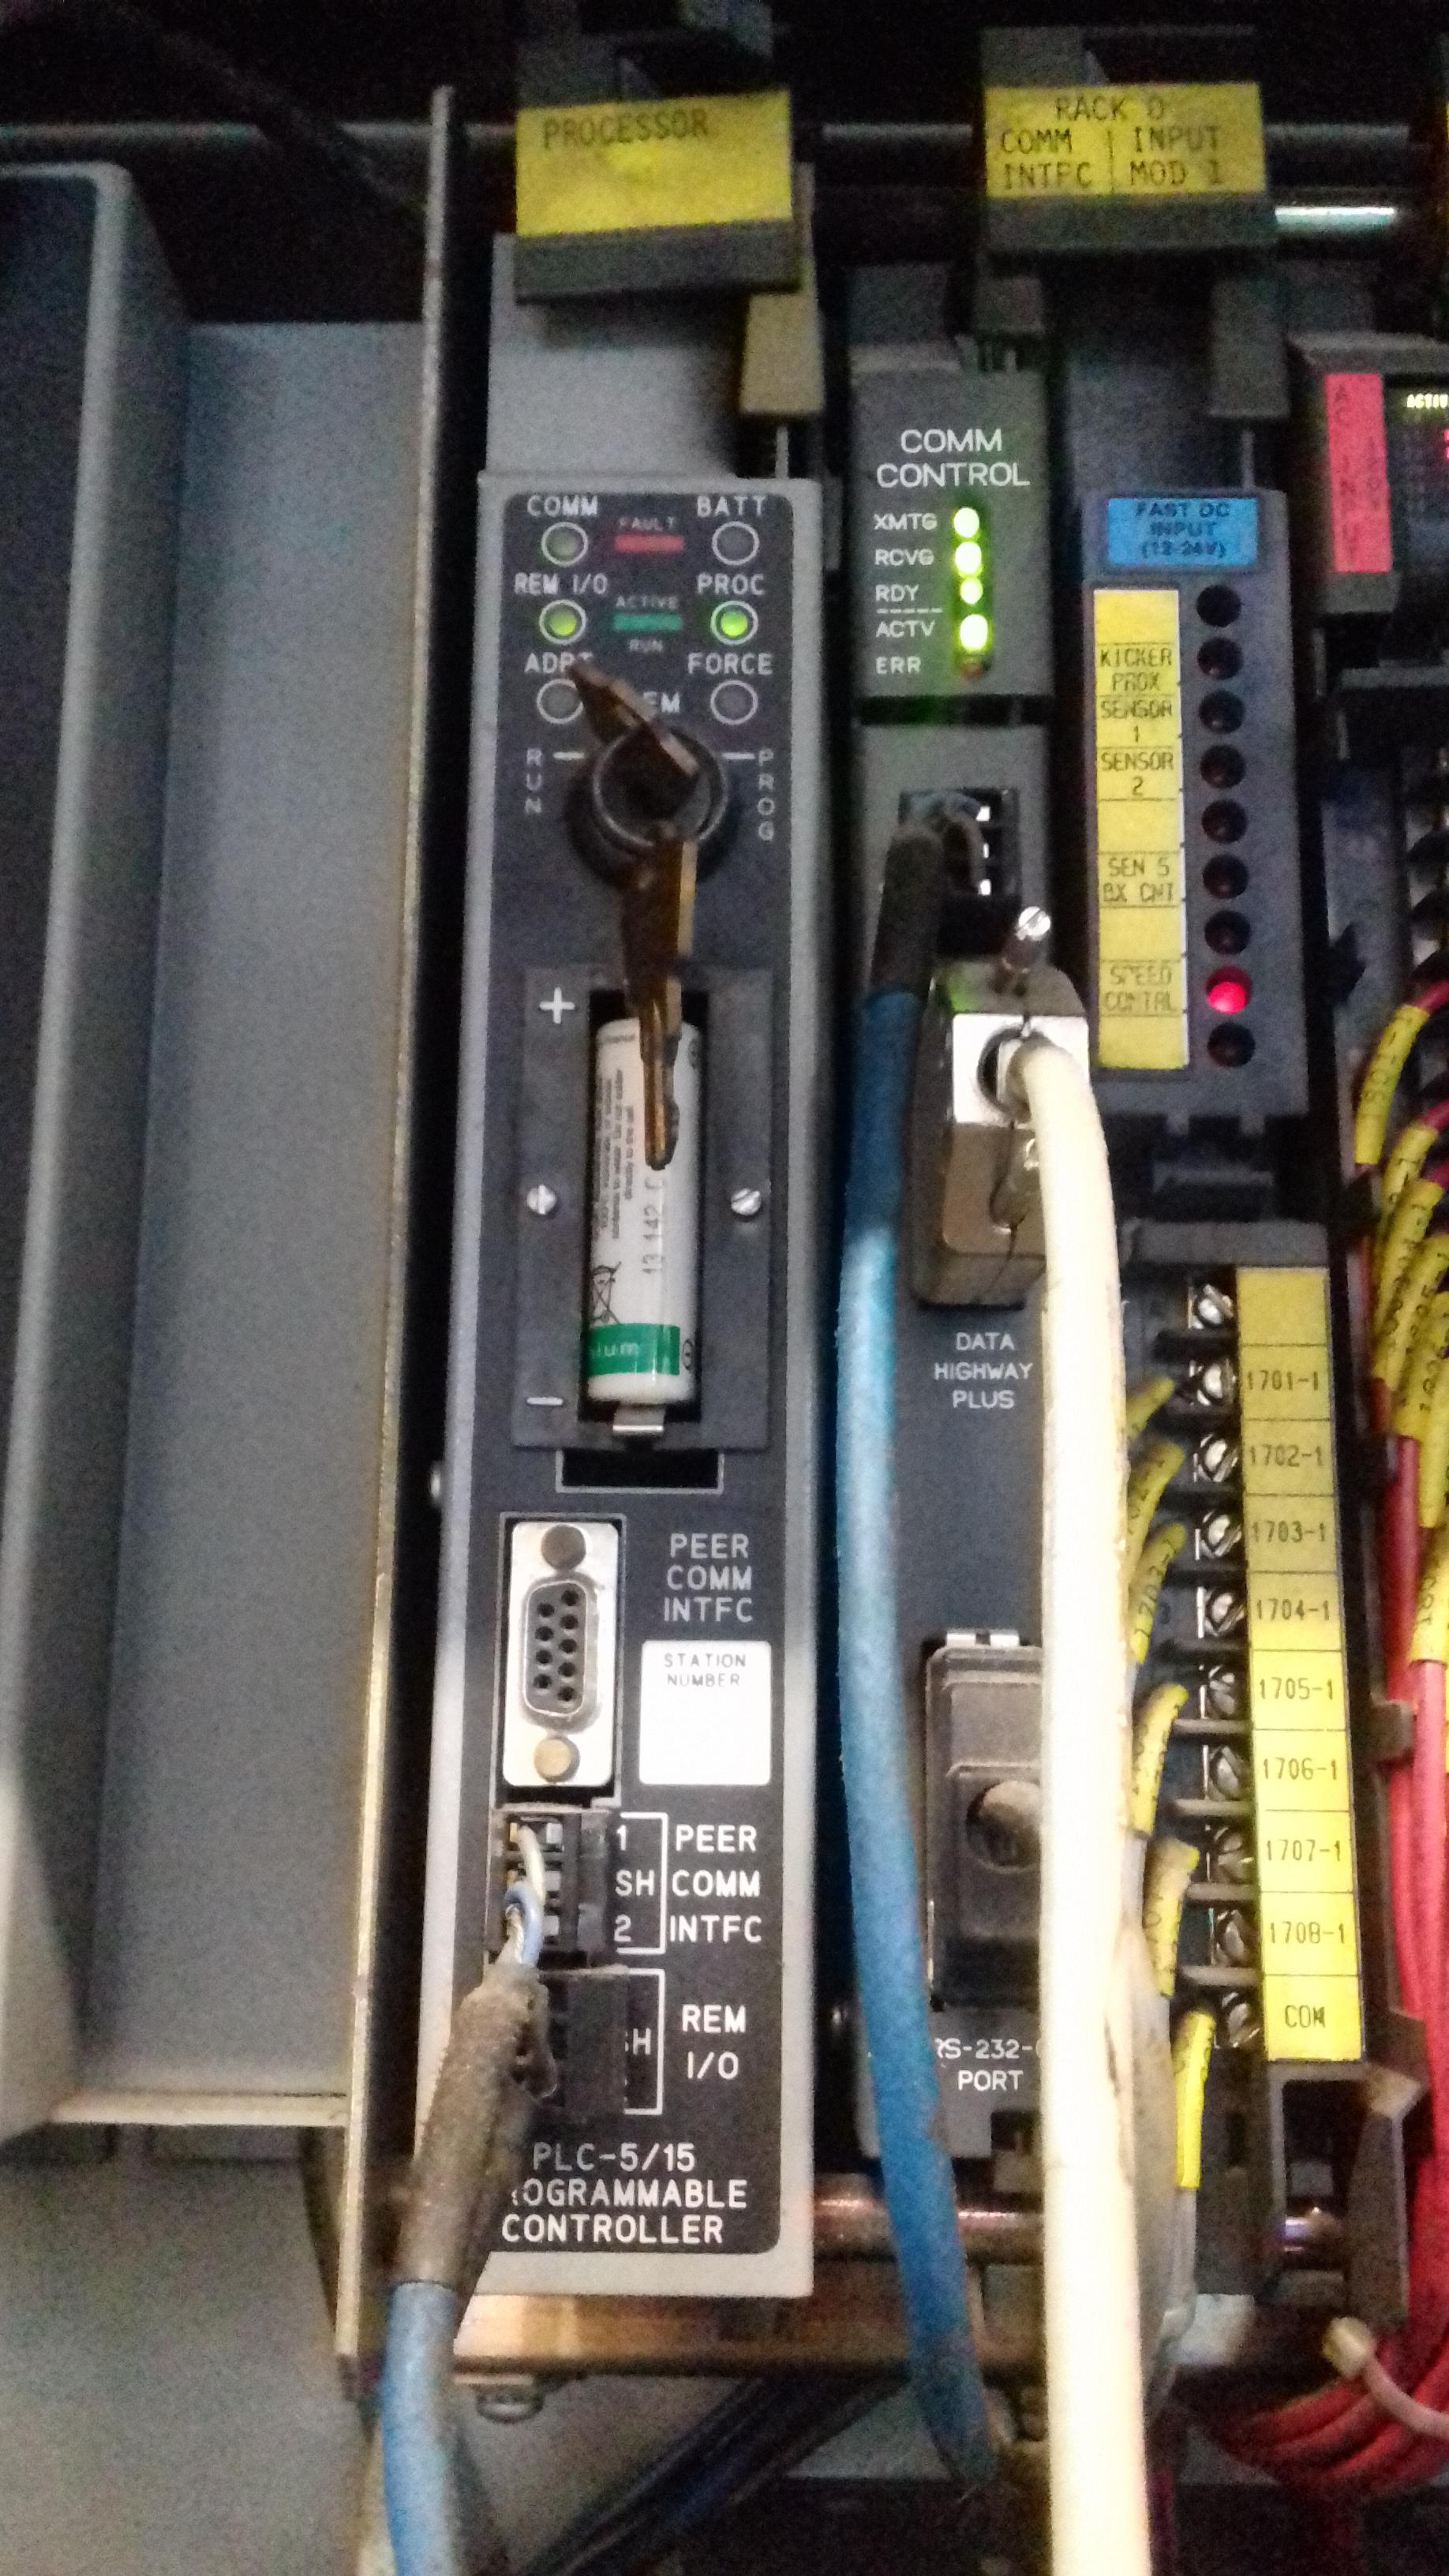 Allen-Bradley PLC-5 communication setup with comm control card - Allen